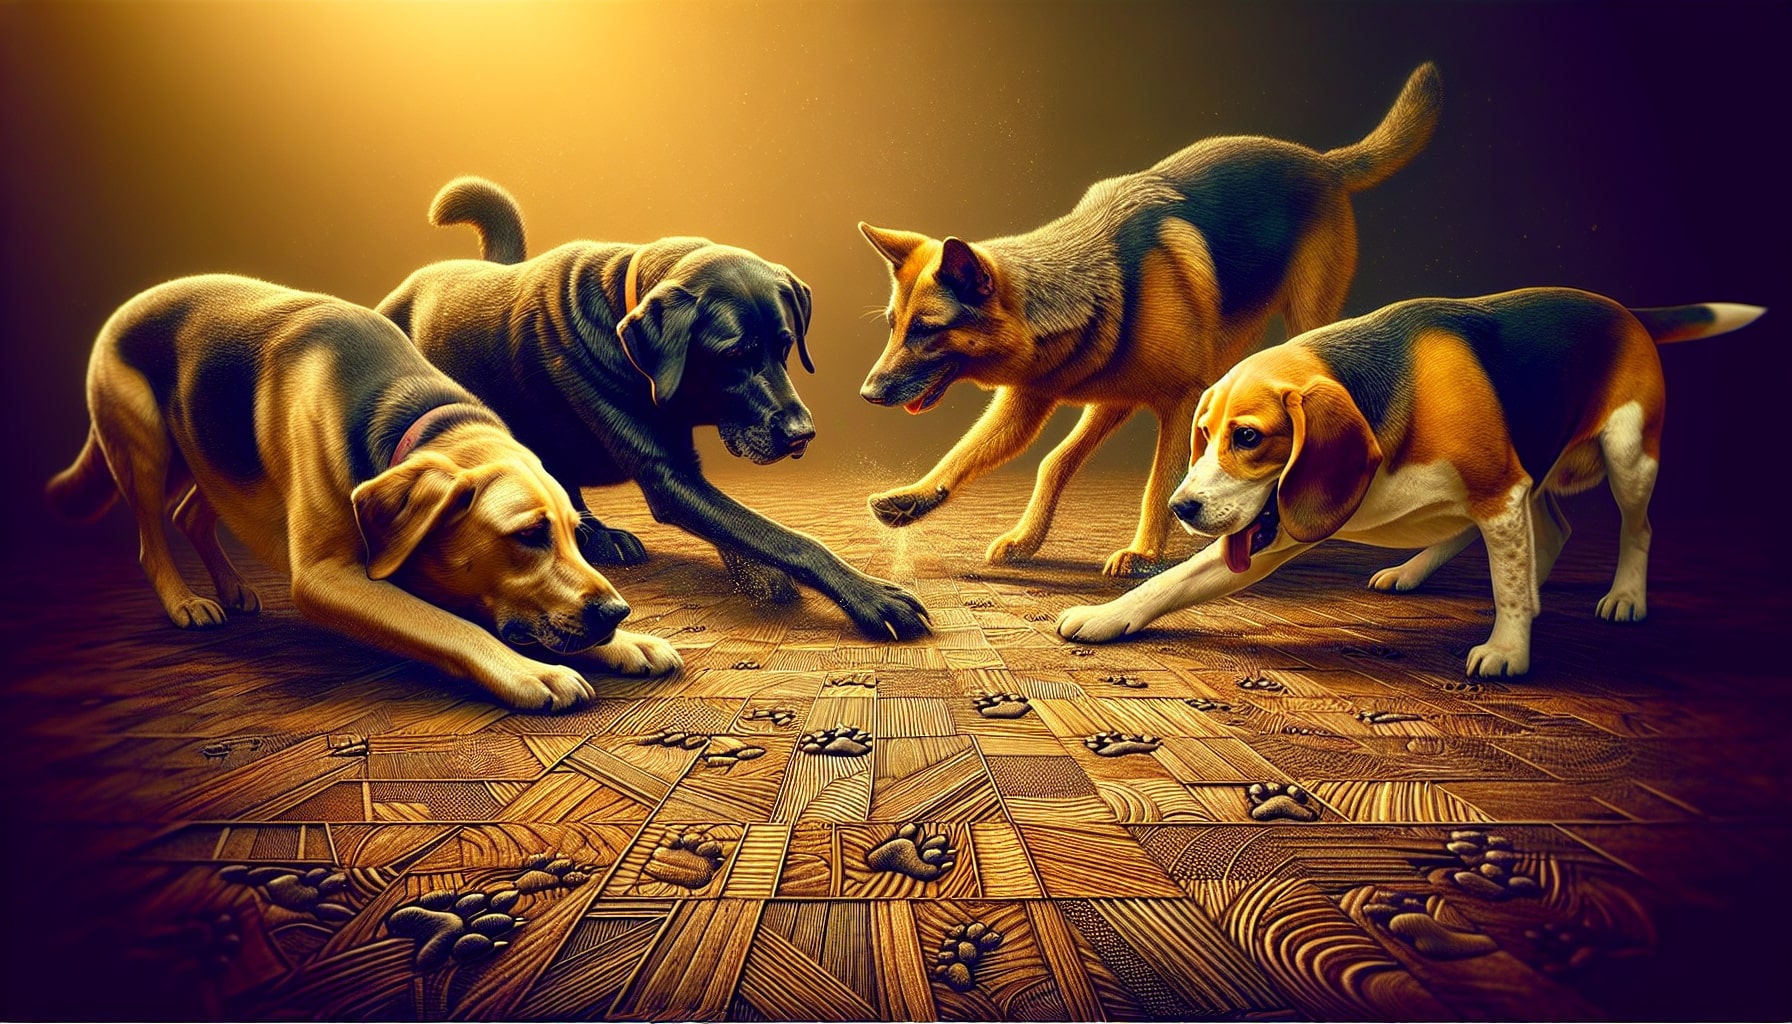 Four dogs on illuminated wooden floor.